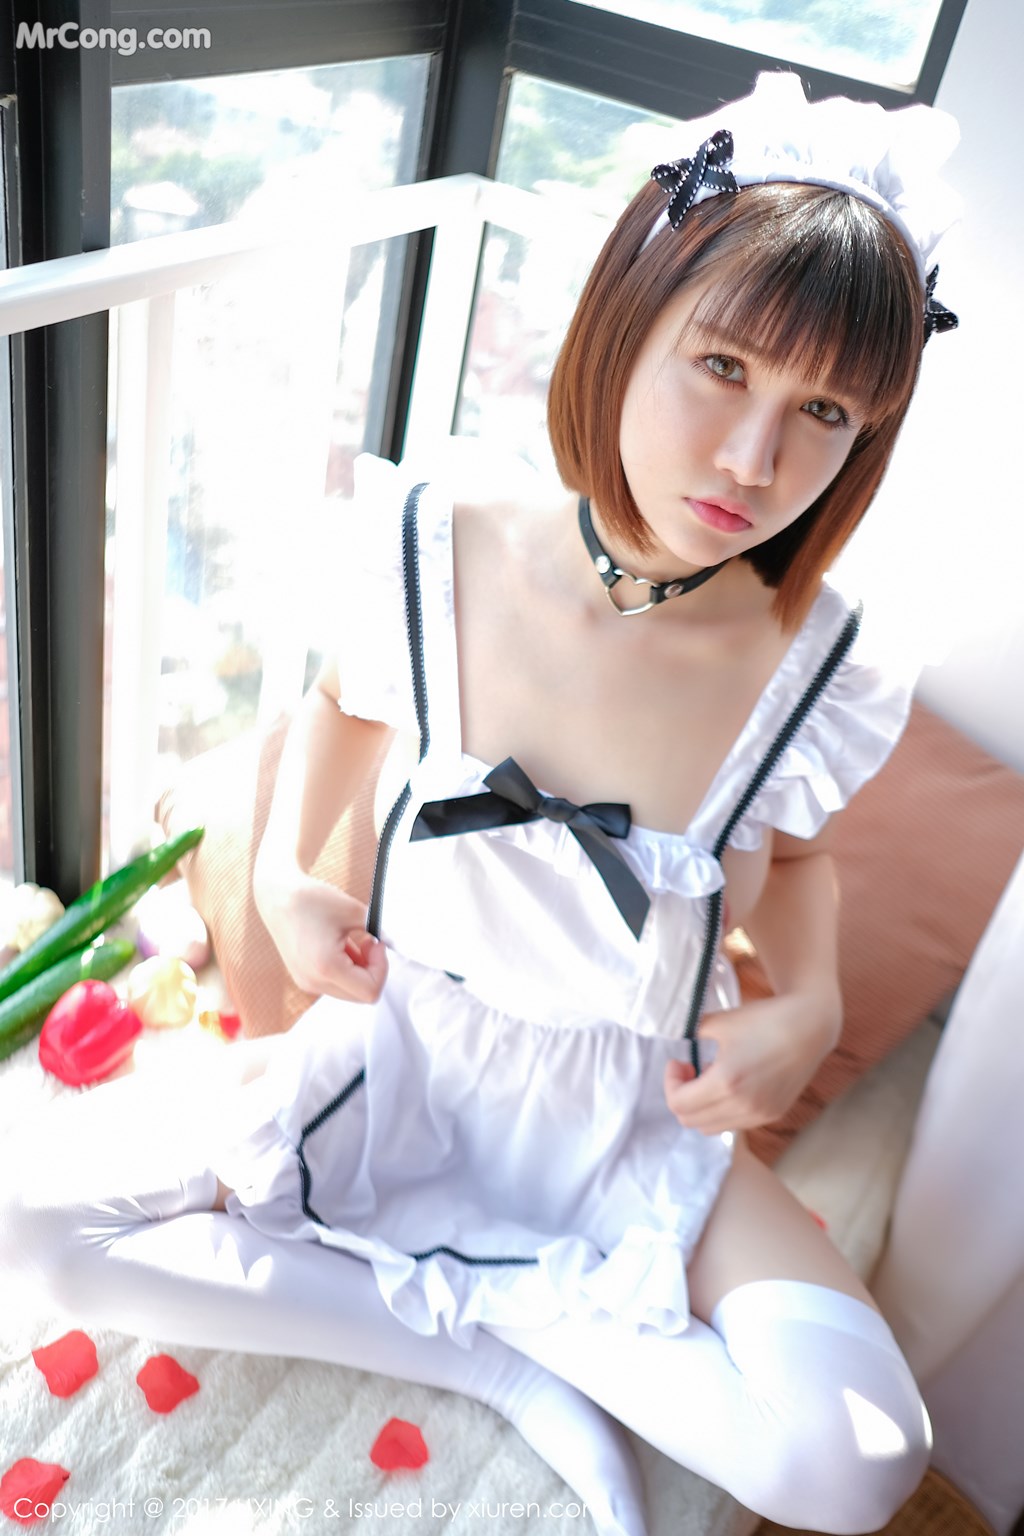 UXING Vol.058: Model Aojiao Meng Meng (K8 傲 娇 萌萌 Vivian) (35 photos) photo 1-2